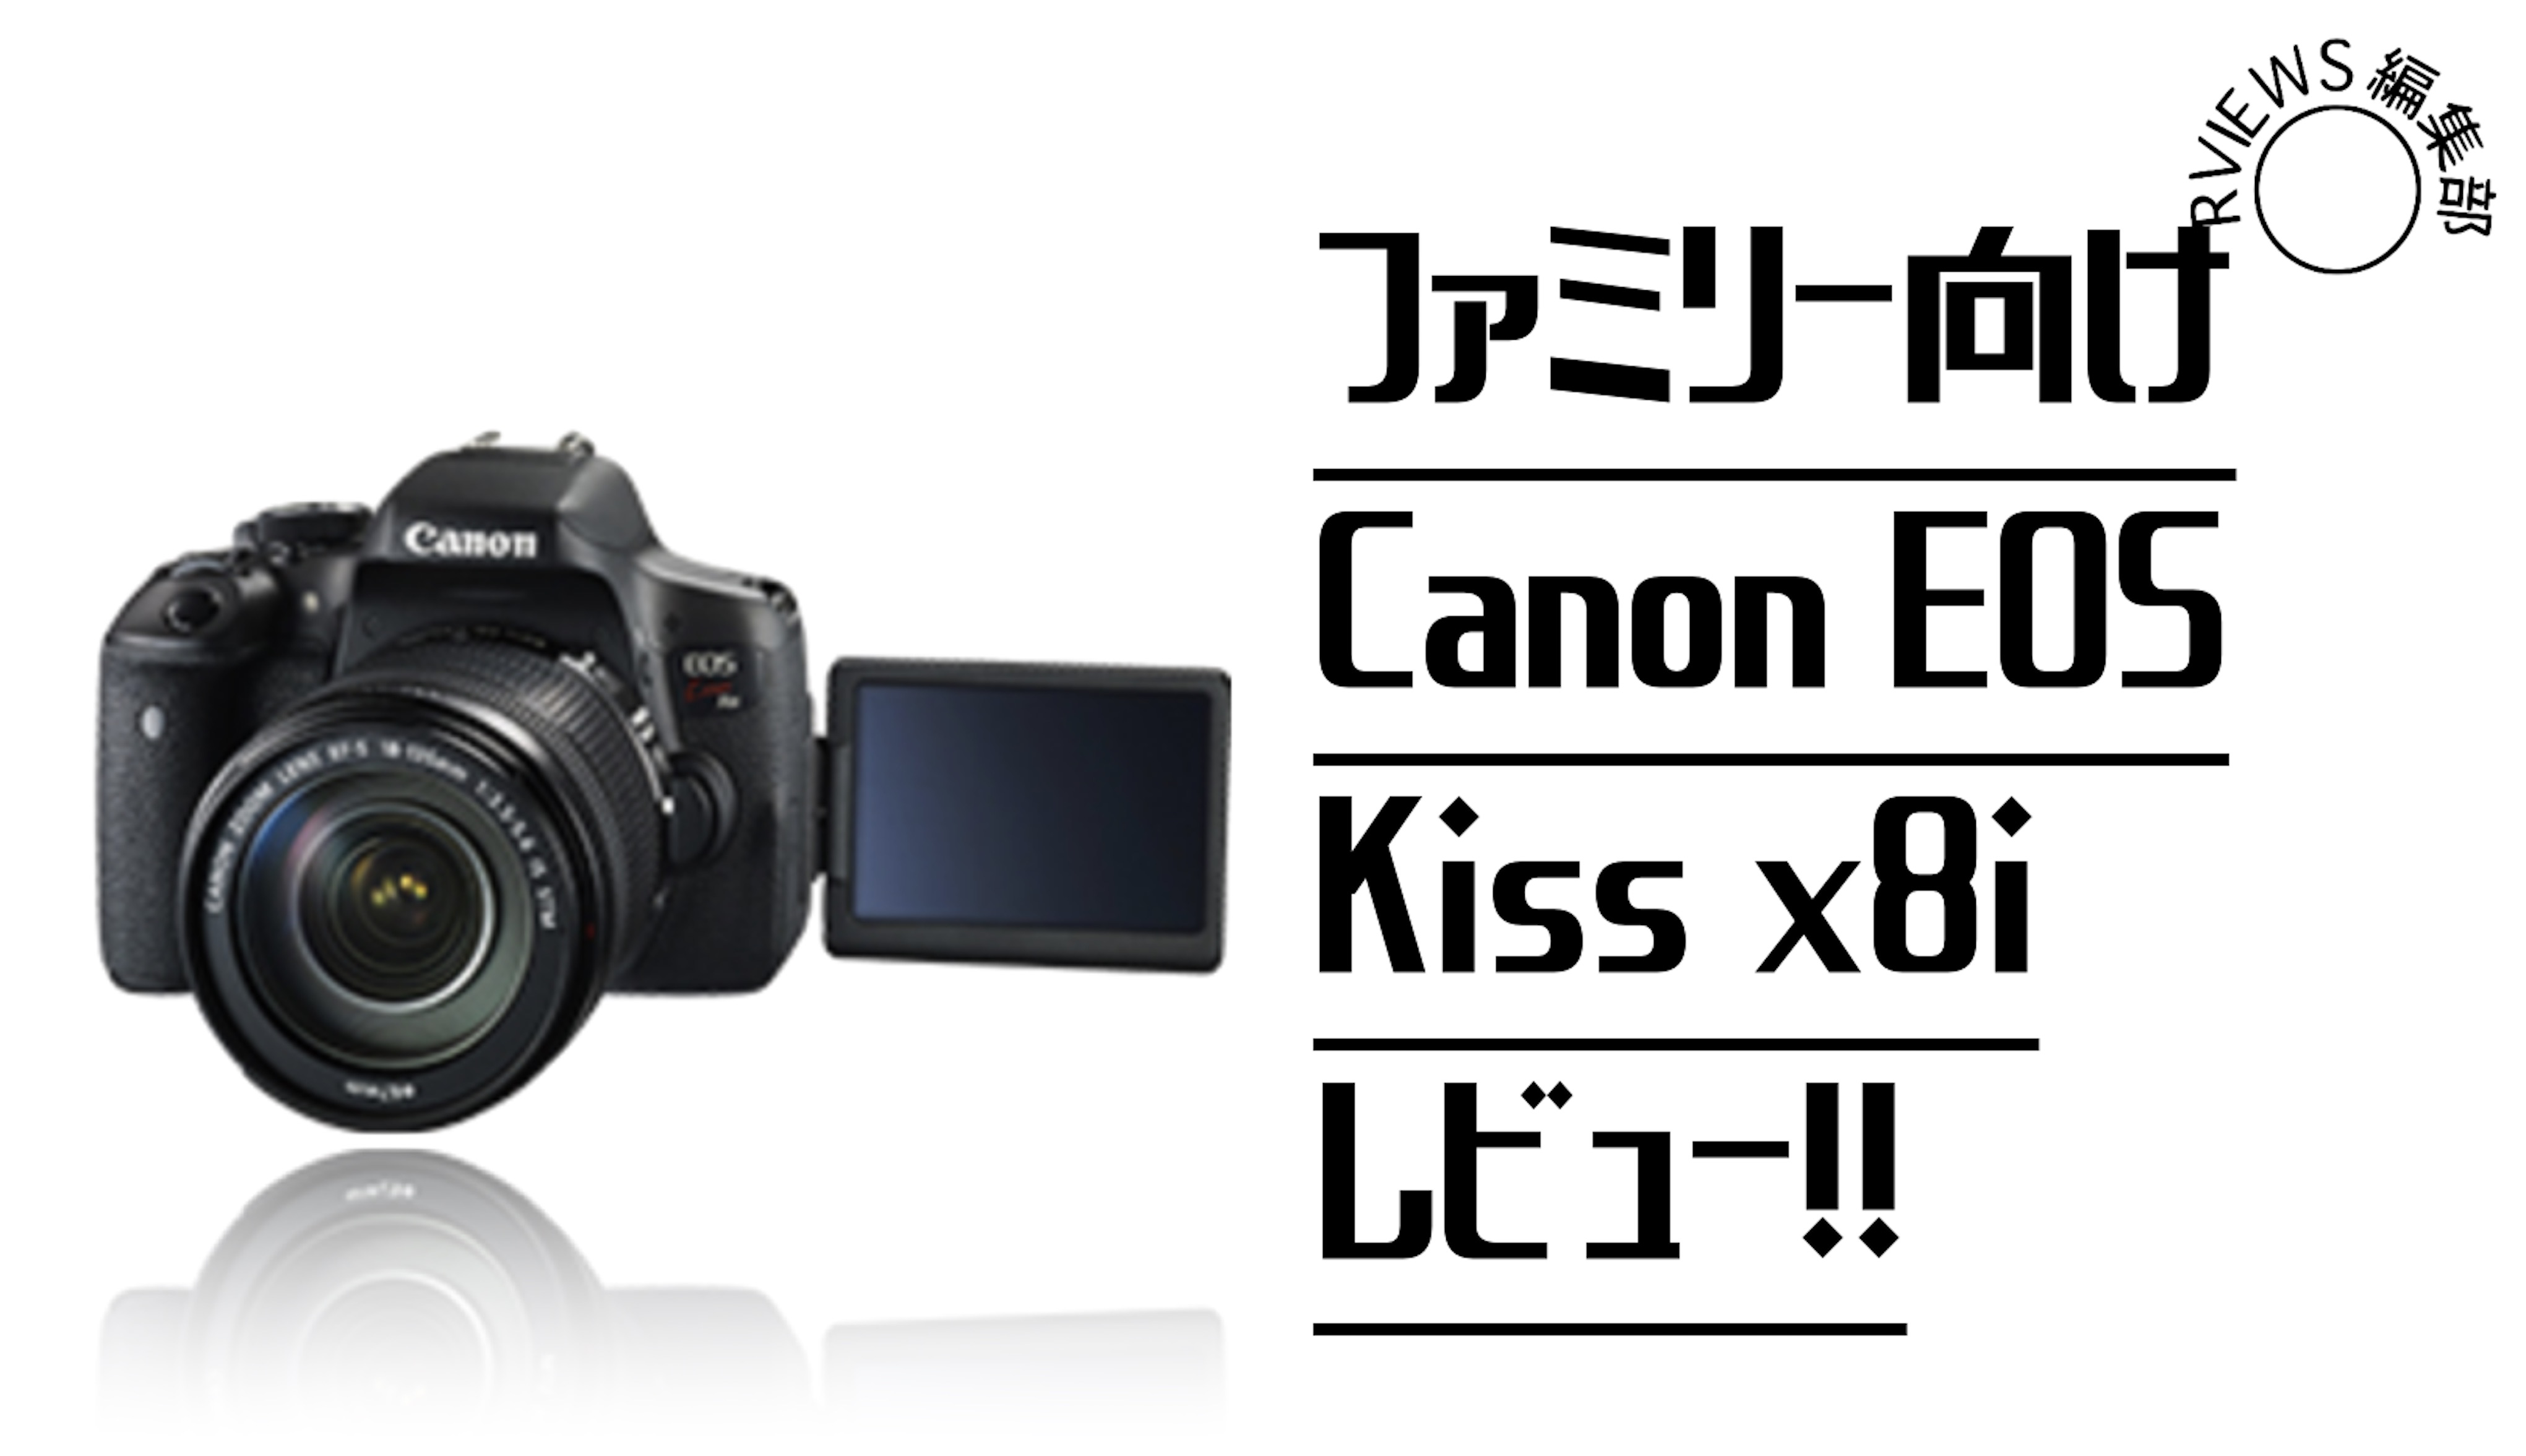 キャノンデジタル一眼レフカメラCanon EOS Kiss x8i レンズキットスマホ/家電/カメラ